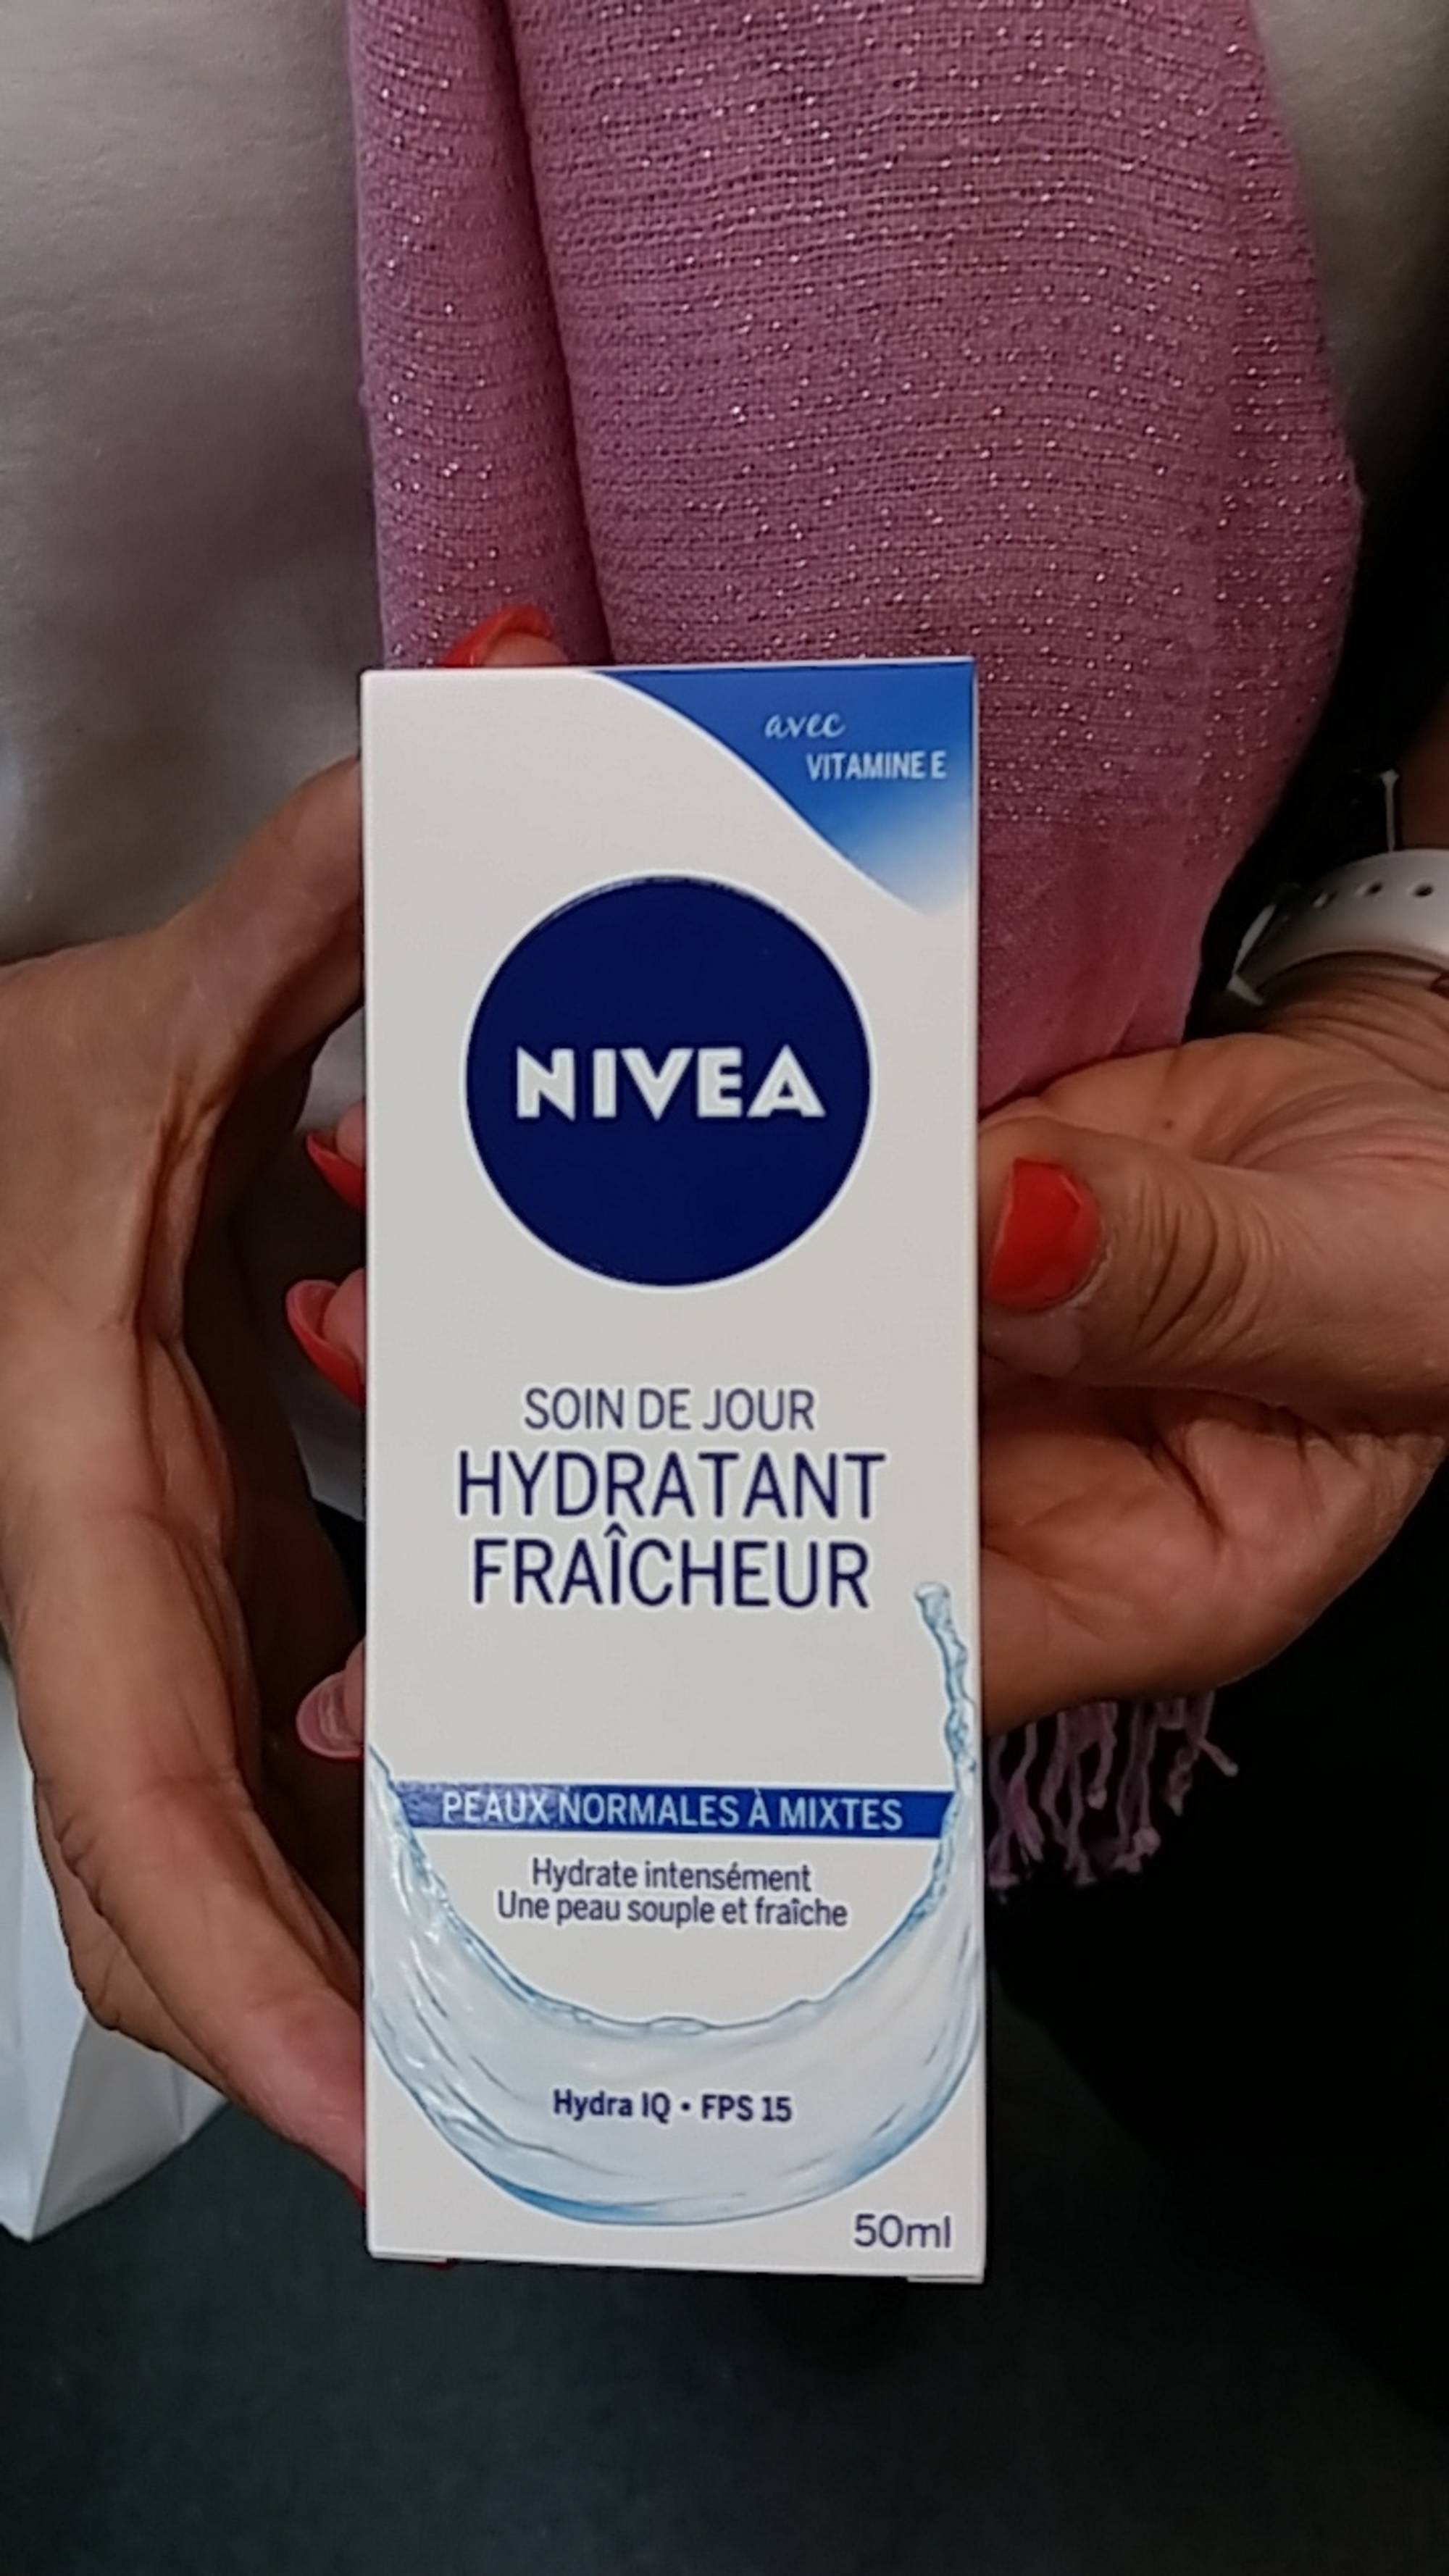 NIVEA - Soin de jour hydratant fraîcheur